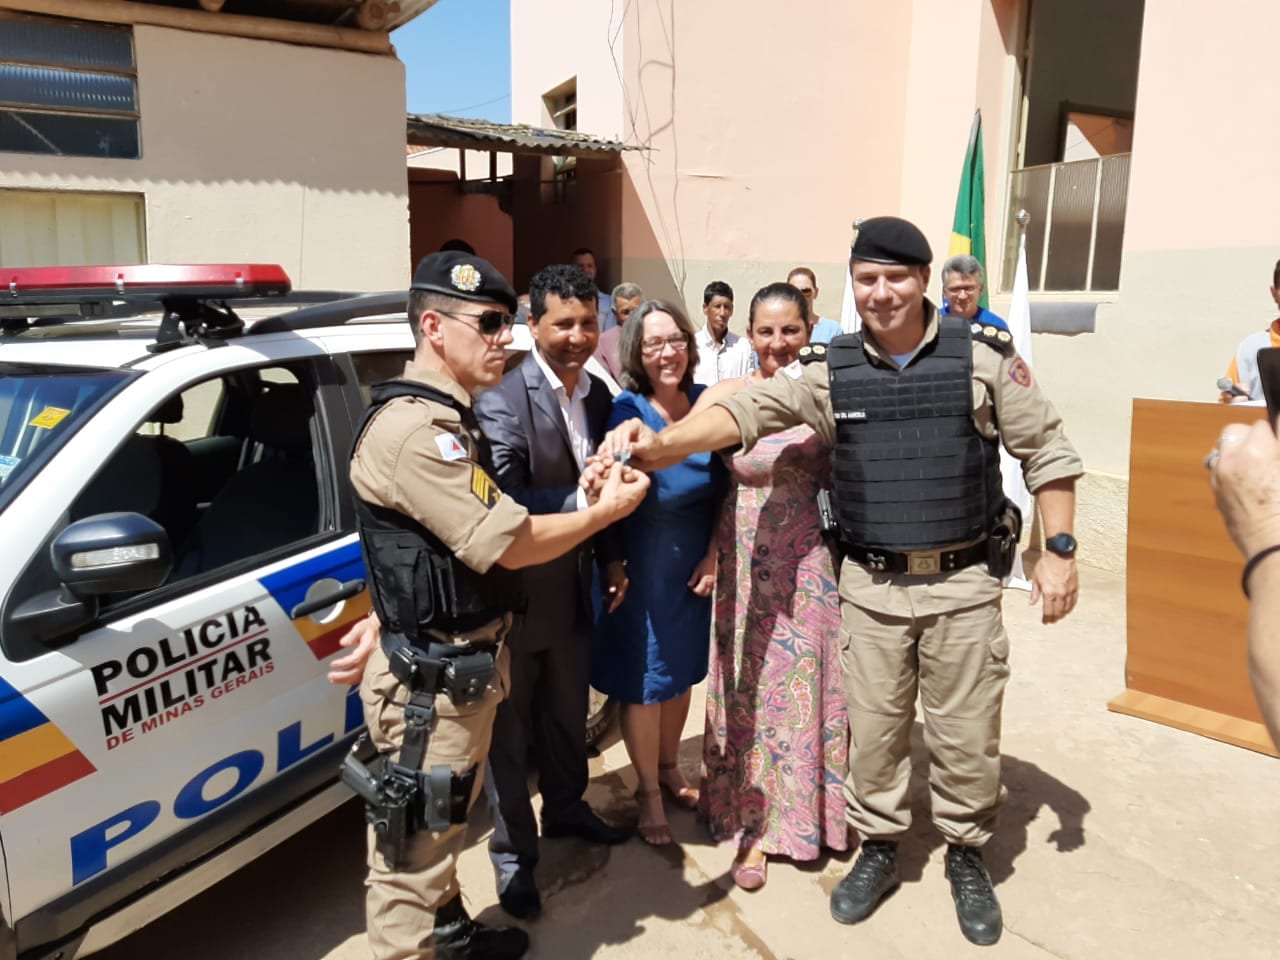 Polícia Militar de São Miguel do Anta recebe nova viatura